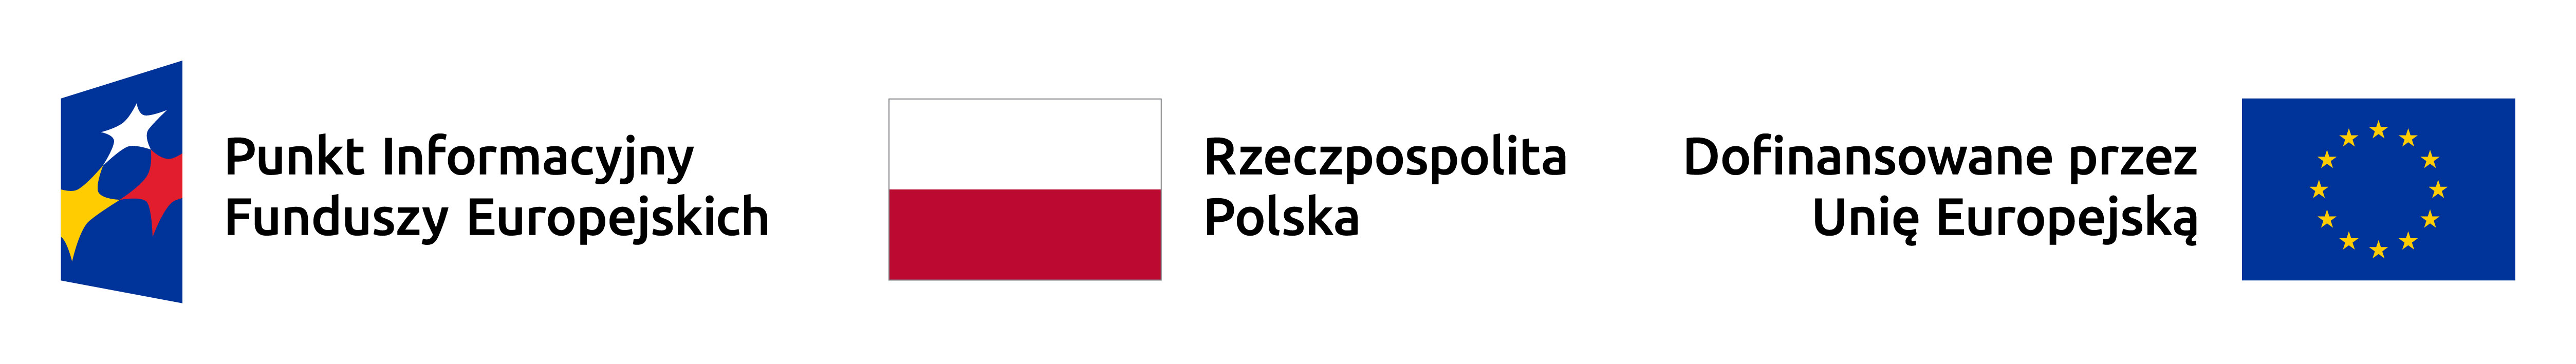 Zestawienie znaków składające się z logotypów Punkt Informacyjny Funduszy Europejskich, Rzeczpospolita Polska oraz Dofinansowane przez Unię Europejską